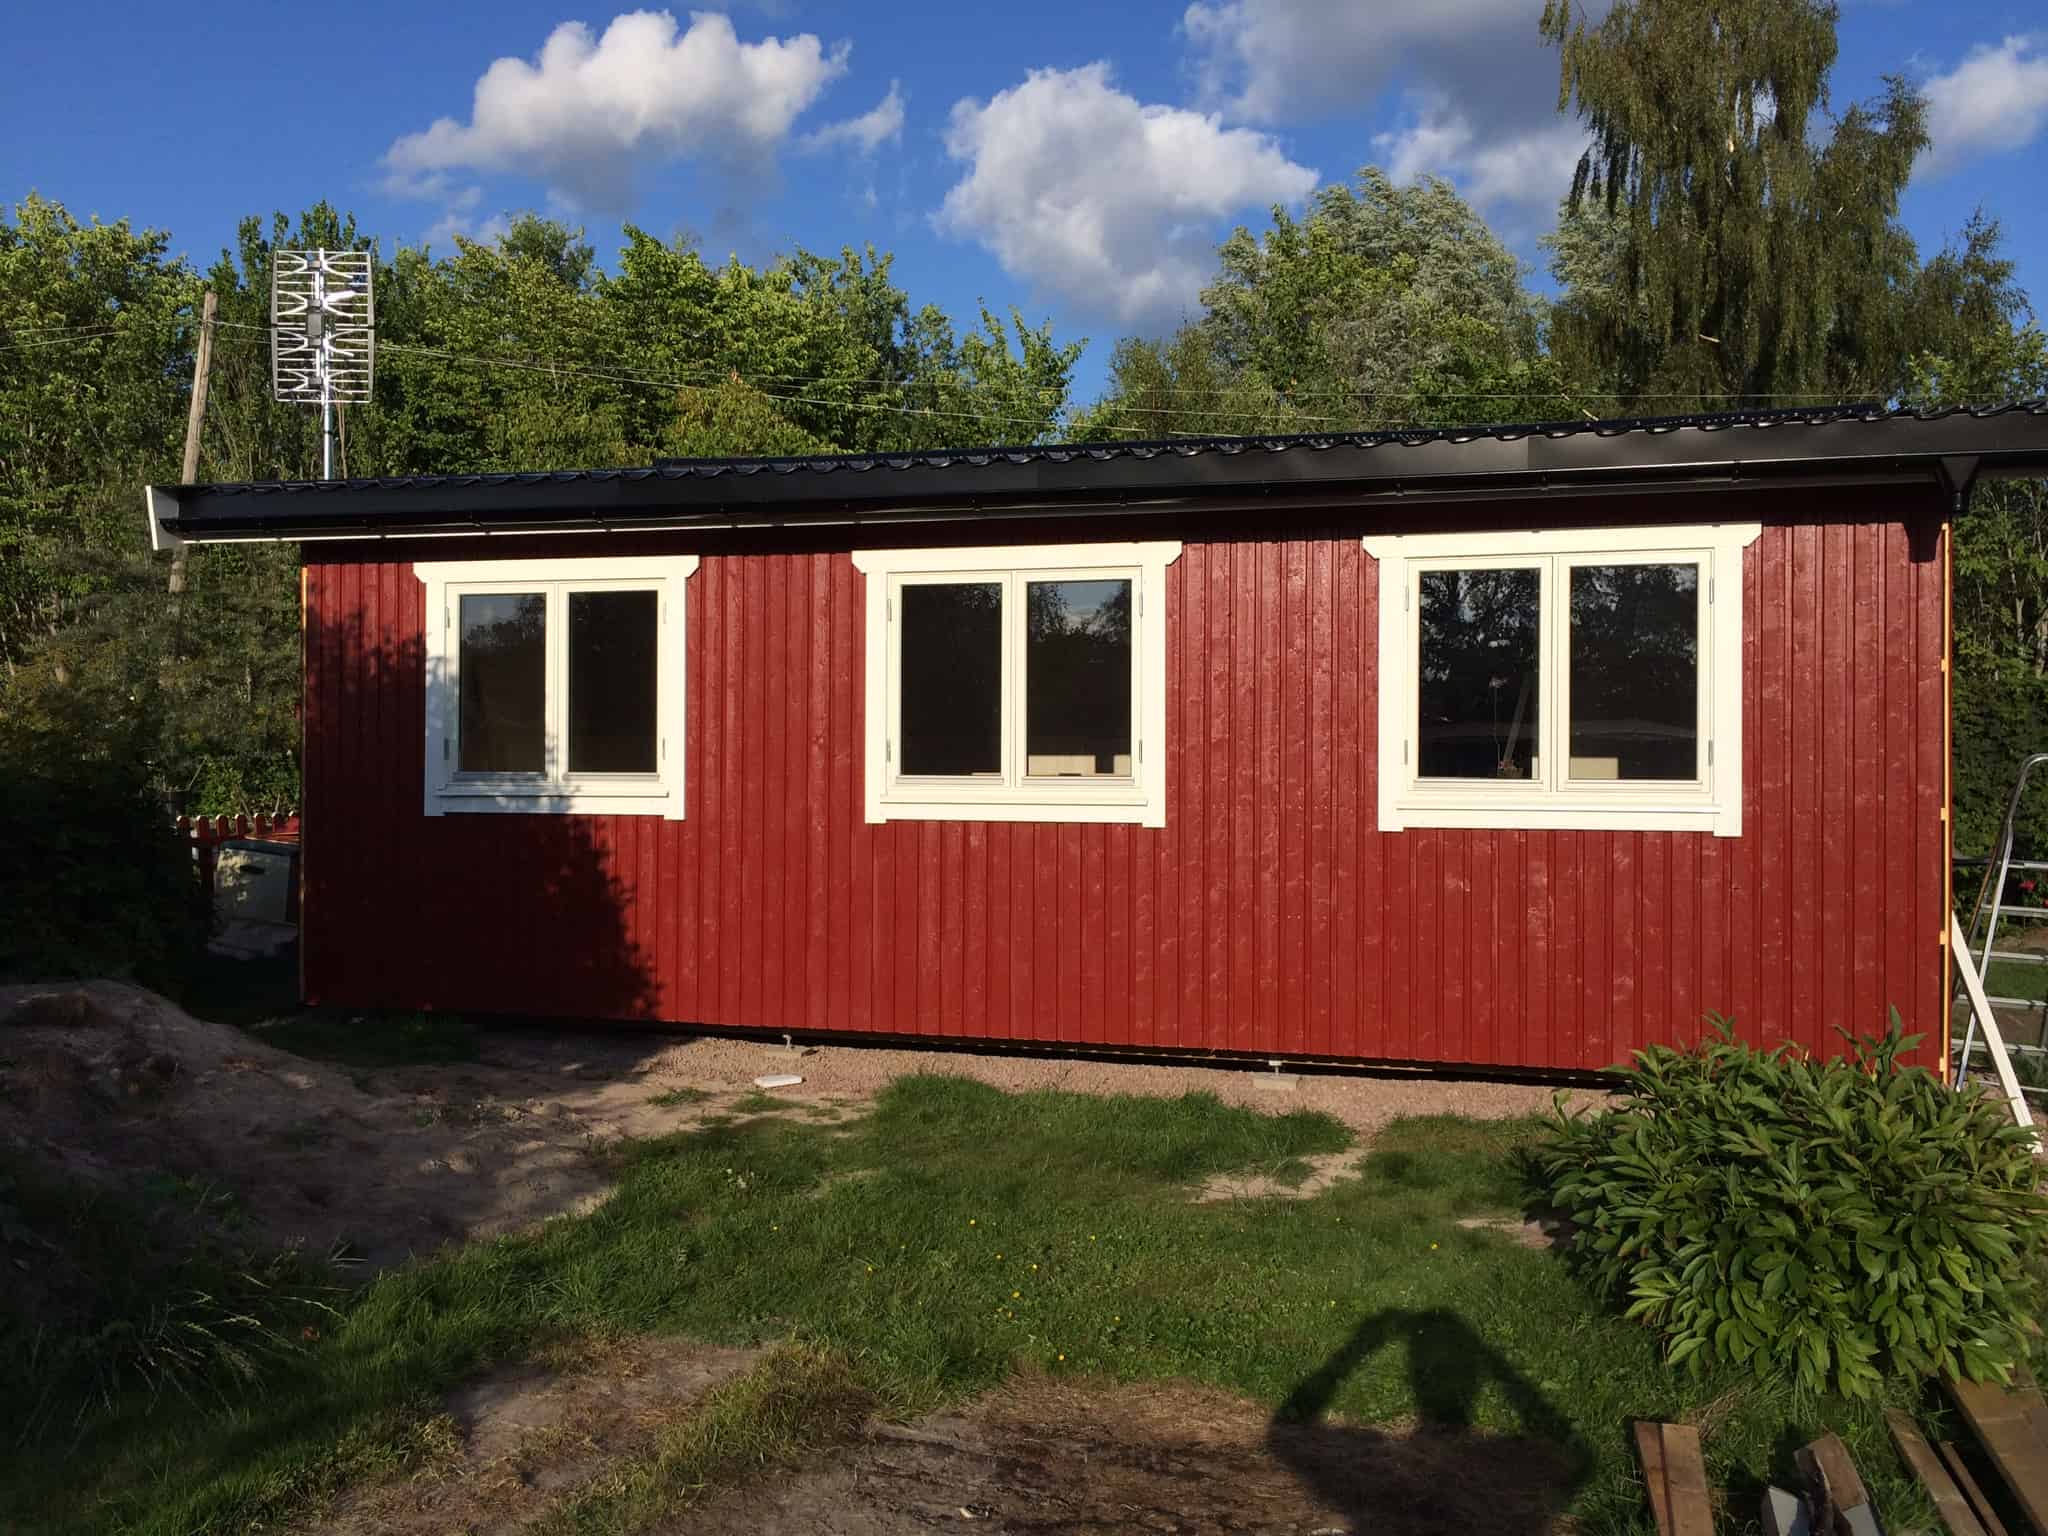 Referensjobb "Utbyggnad av sommarstuga" utfört av Bjarnes Byggservice i Karlstad AB 